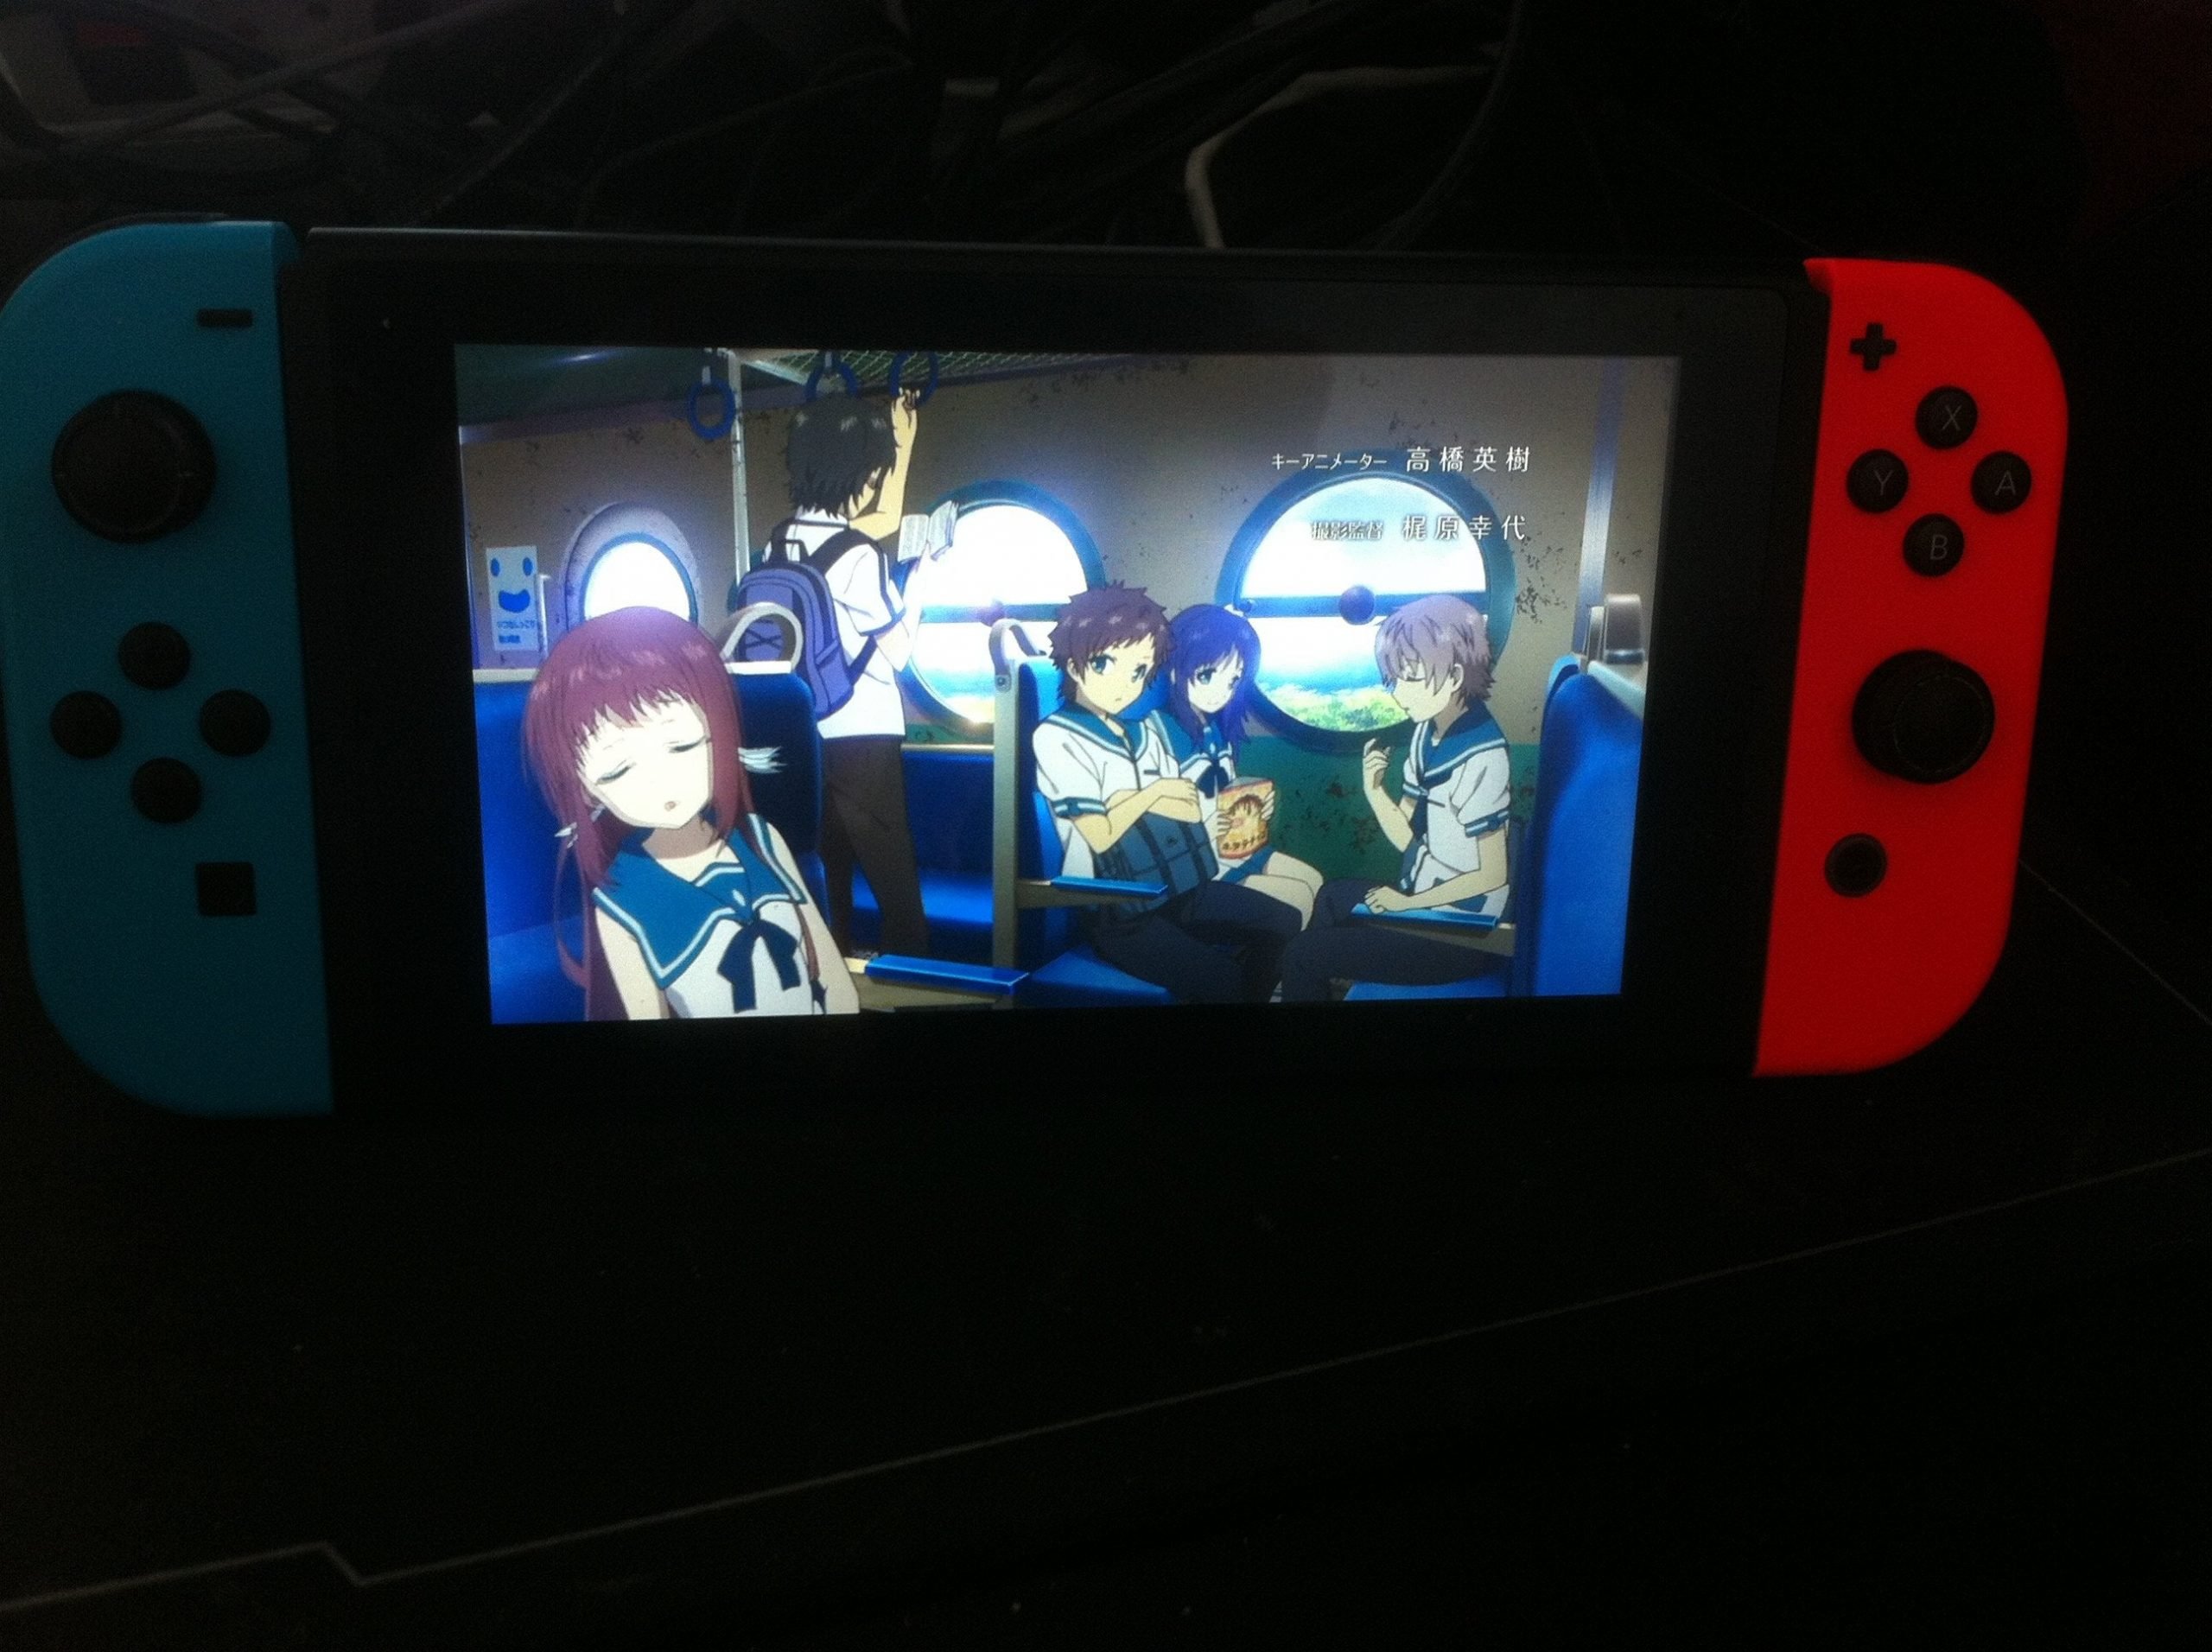 Finally found a way to watch anime on my Nintendo Switch ...